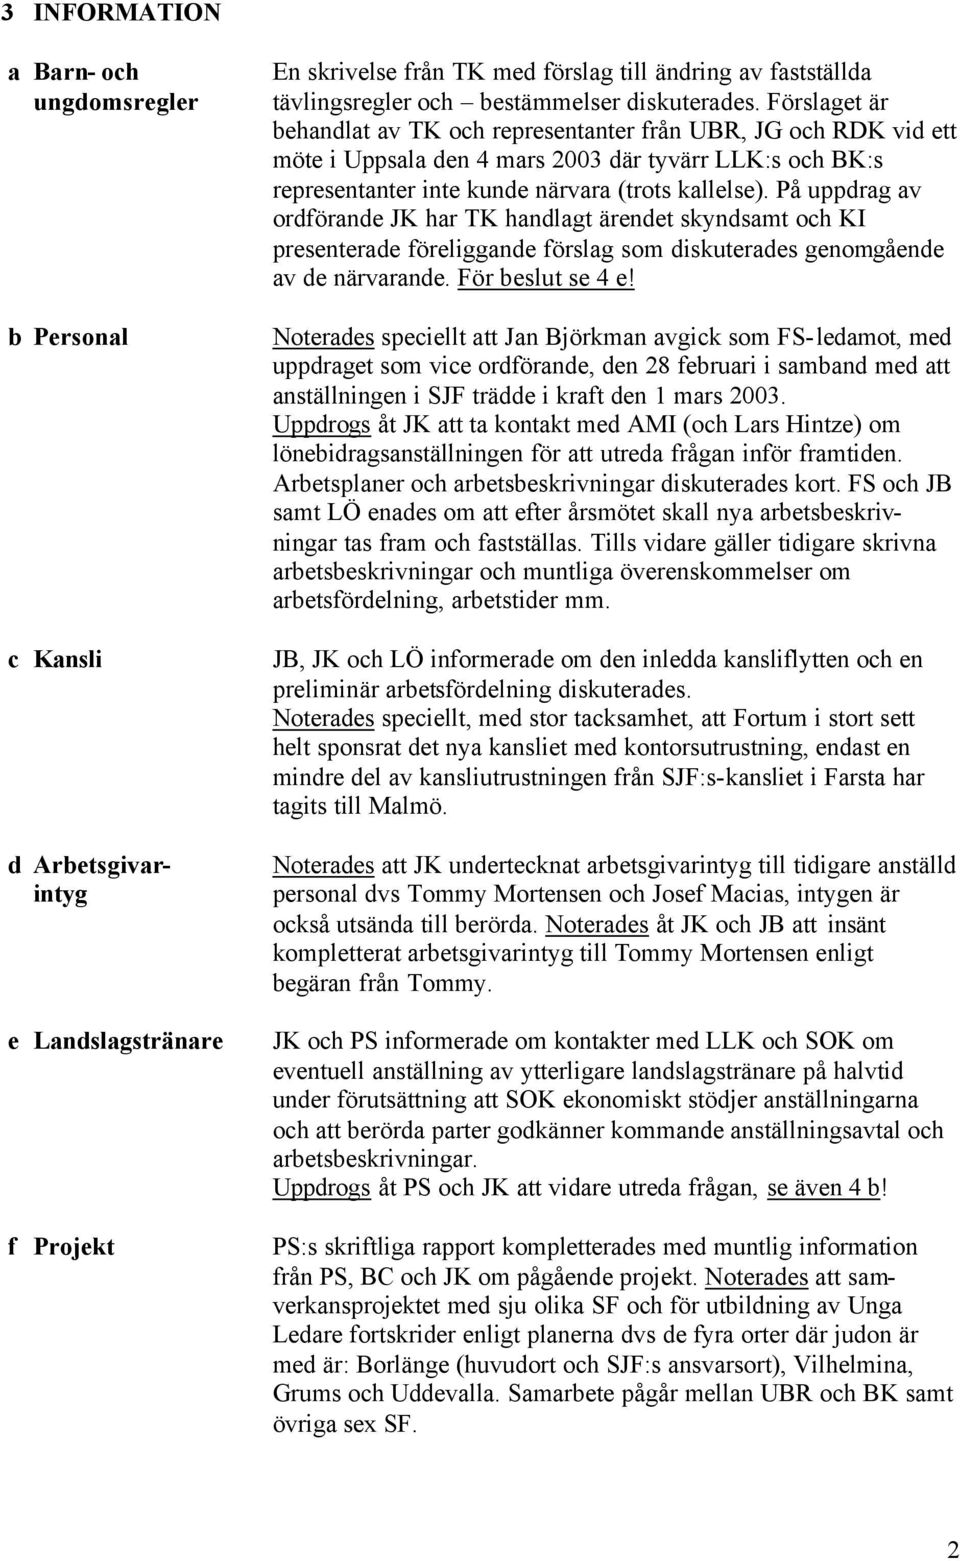 Förslaget är behandlat av TK och representanter från UBR, JG och RDK vid ett möte i Uppsala den 4 mars 2003 där tyvärr LLK:s och BK:s representanter inte kunde närvara (trots kallelse).